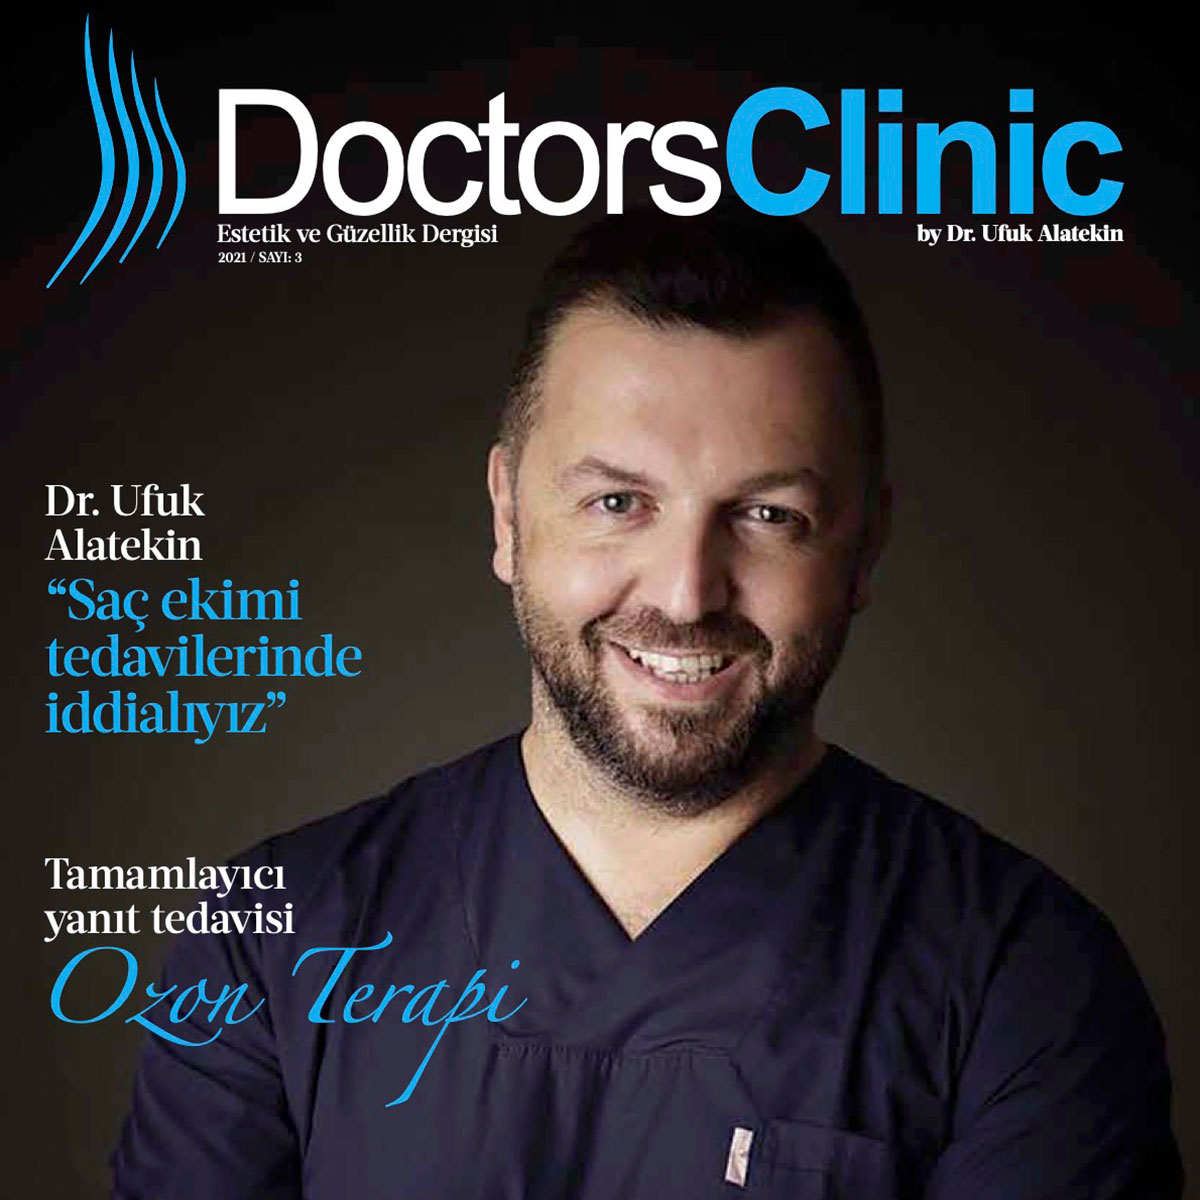 Doctors Clinic by Dr. Ufuk Alatekin